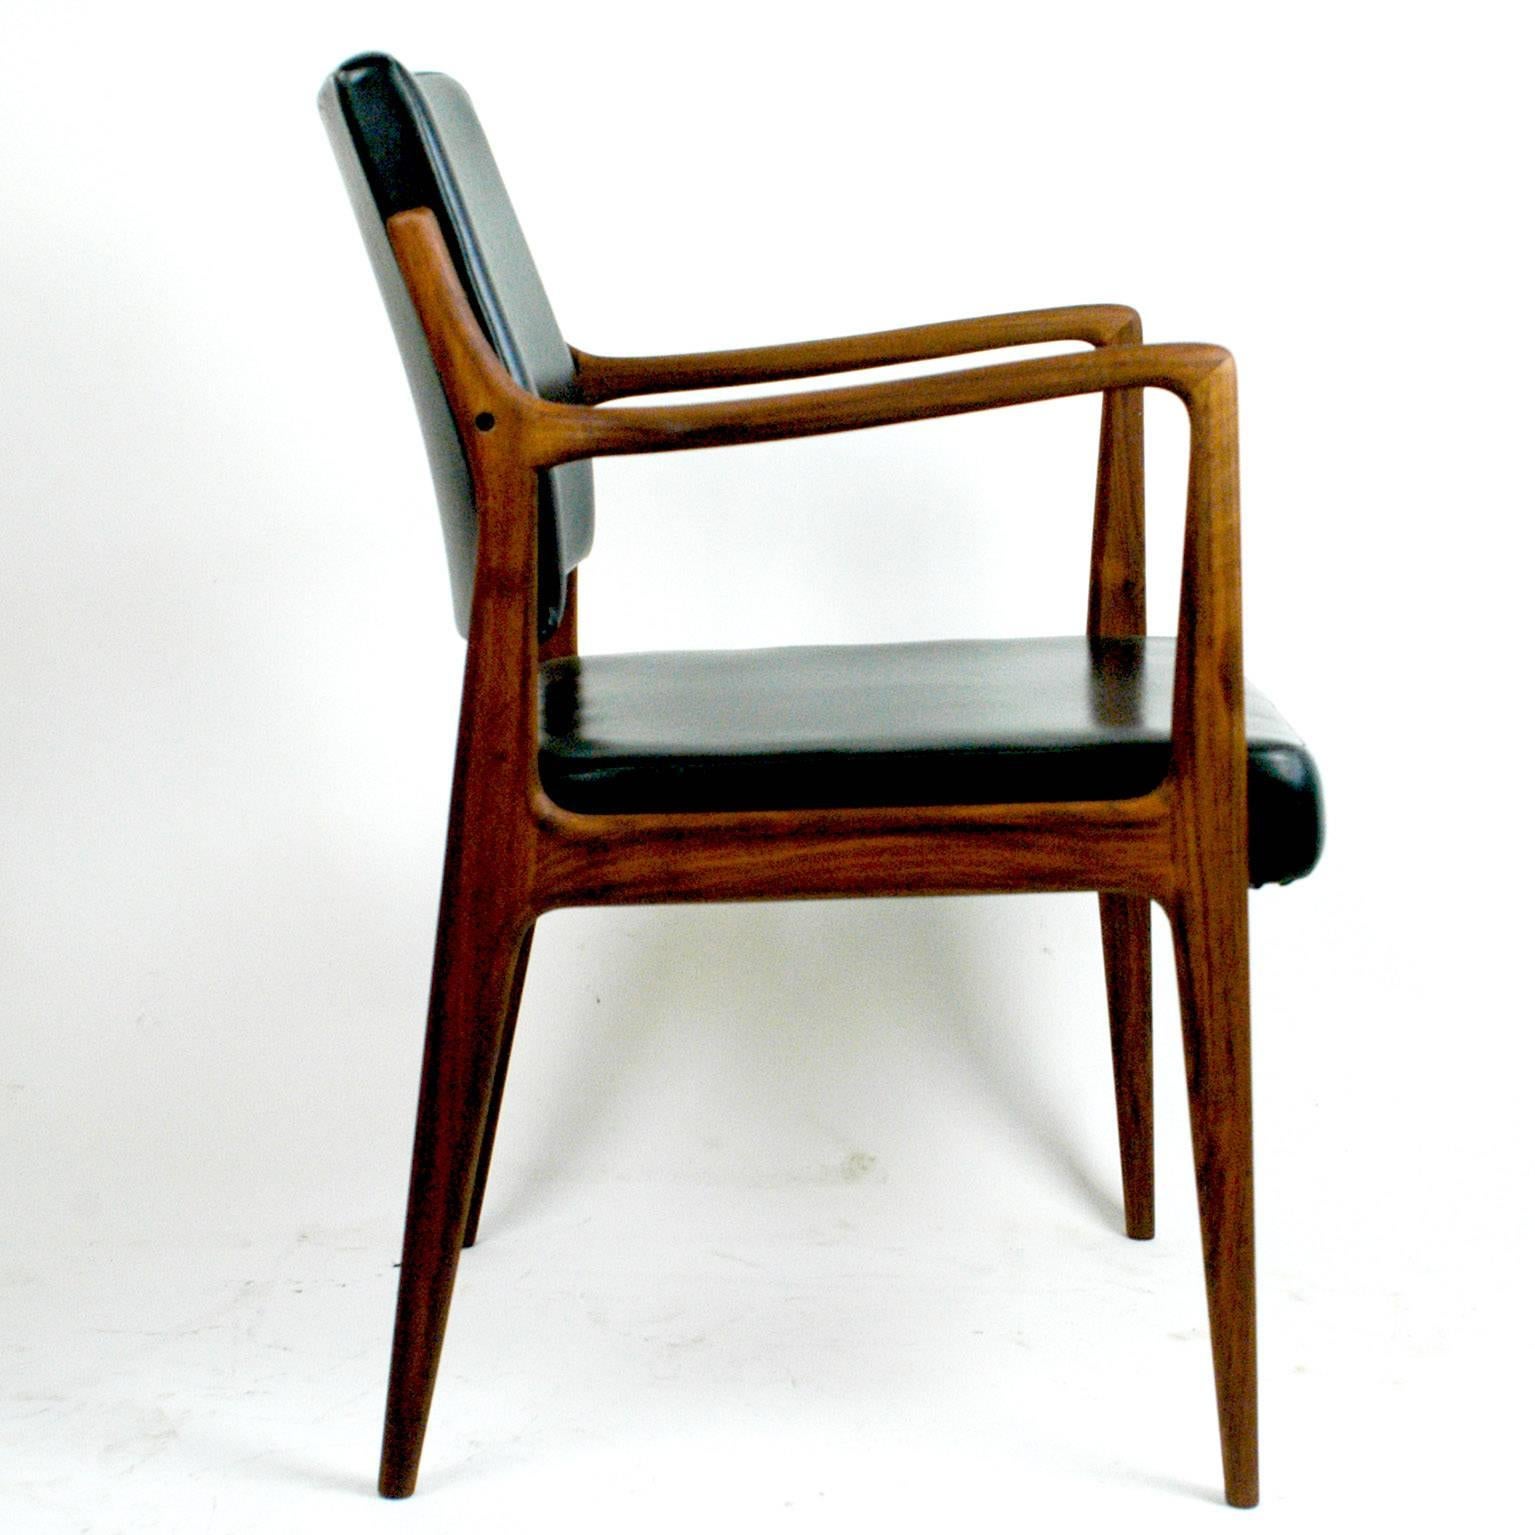 Skandinavisch moderner Sessel aus Teakholz und schwarzem Kunstleder von K. E. Ekselius (Skandinavische Moderne)